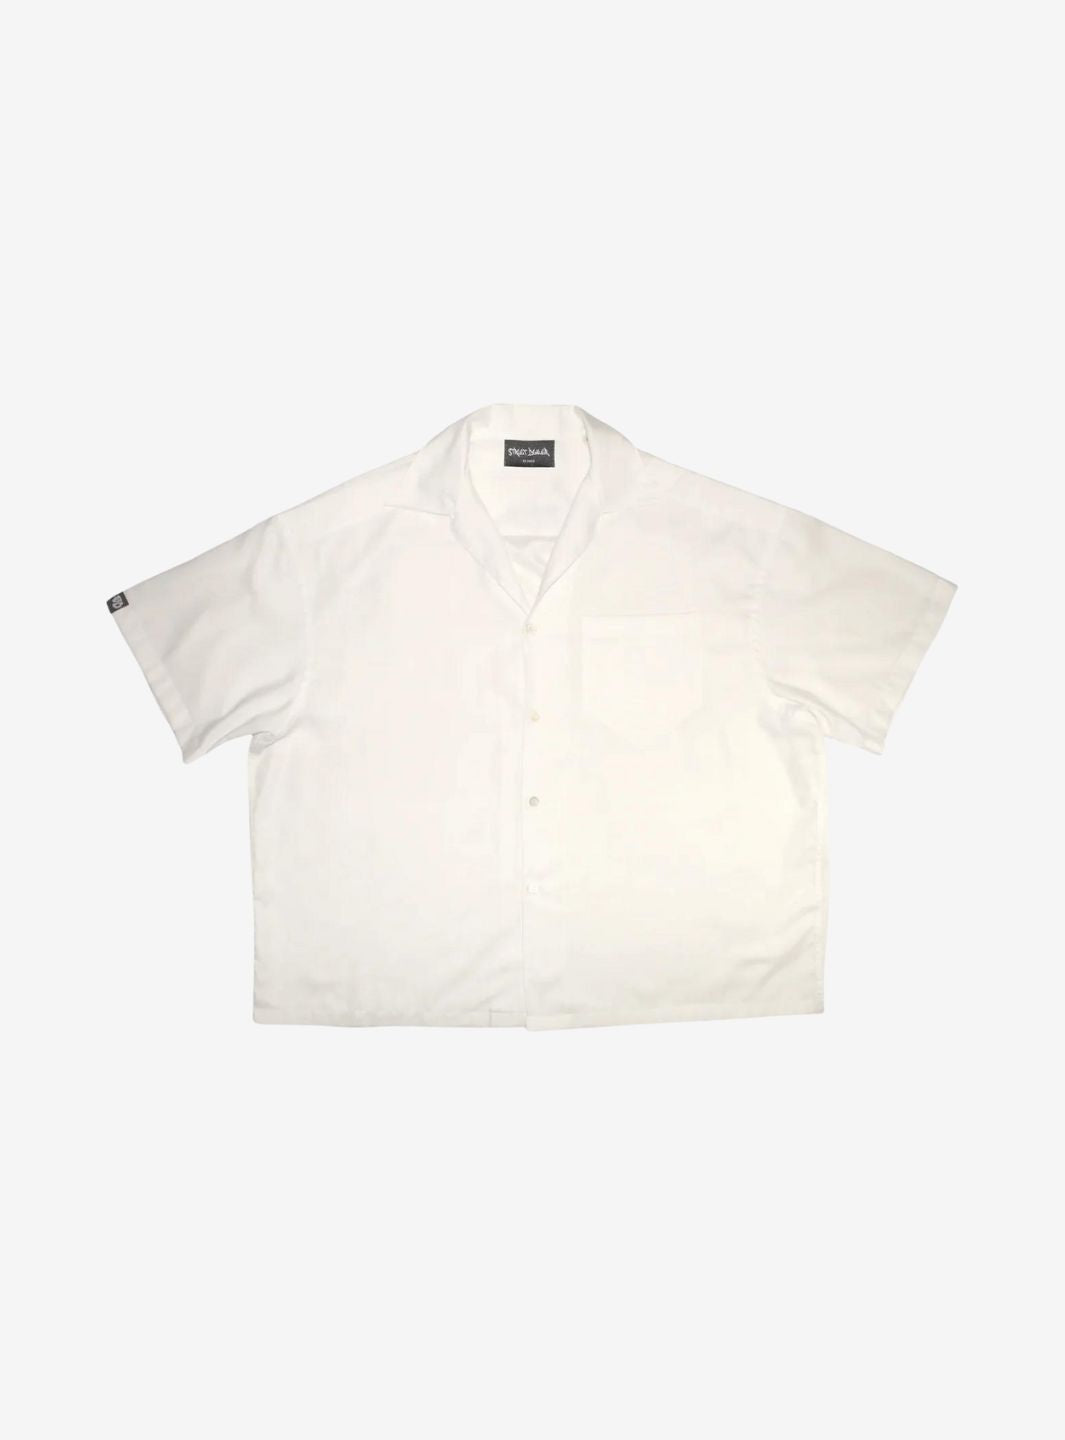 Street Dealer Oversized Shirt White